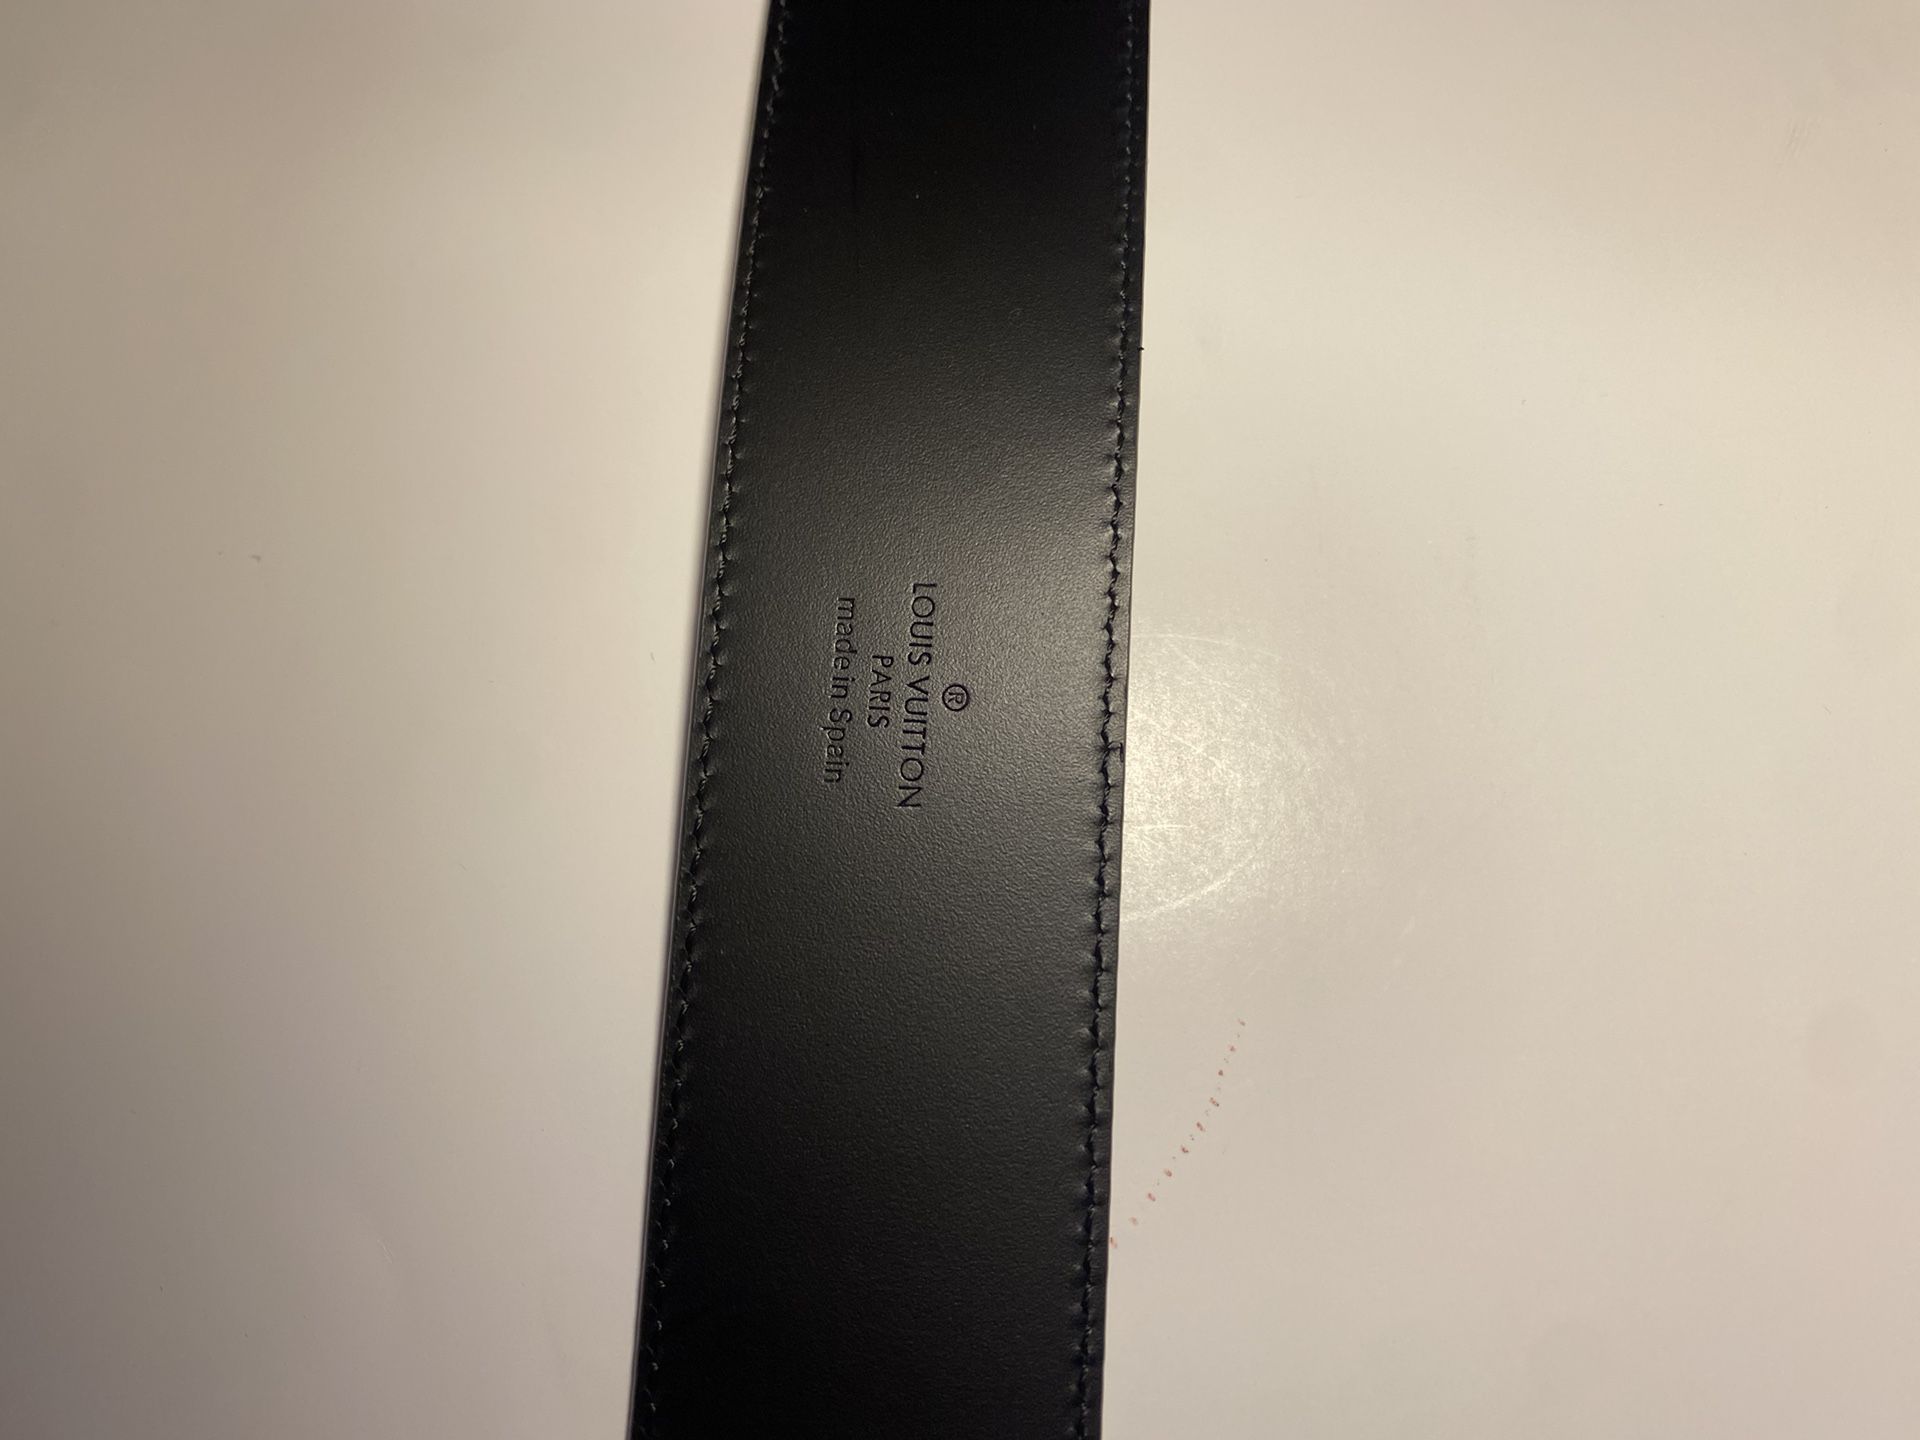 Louis Vuitton Black Square Buckle Belt - Size 100 ○ Labellov